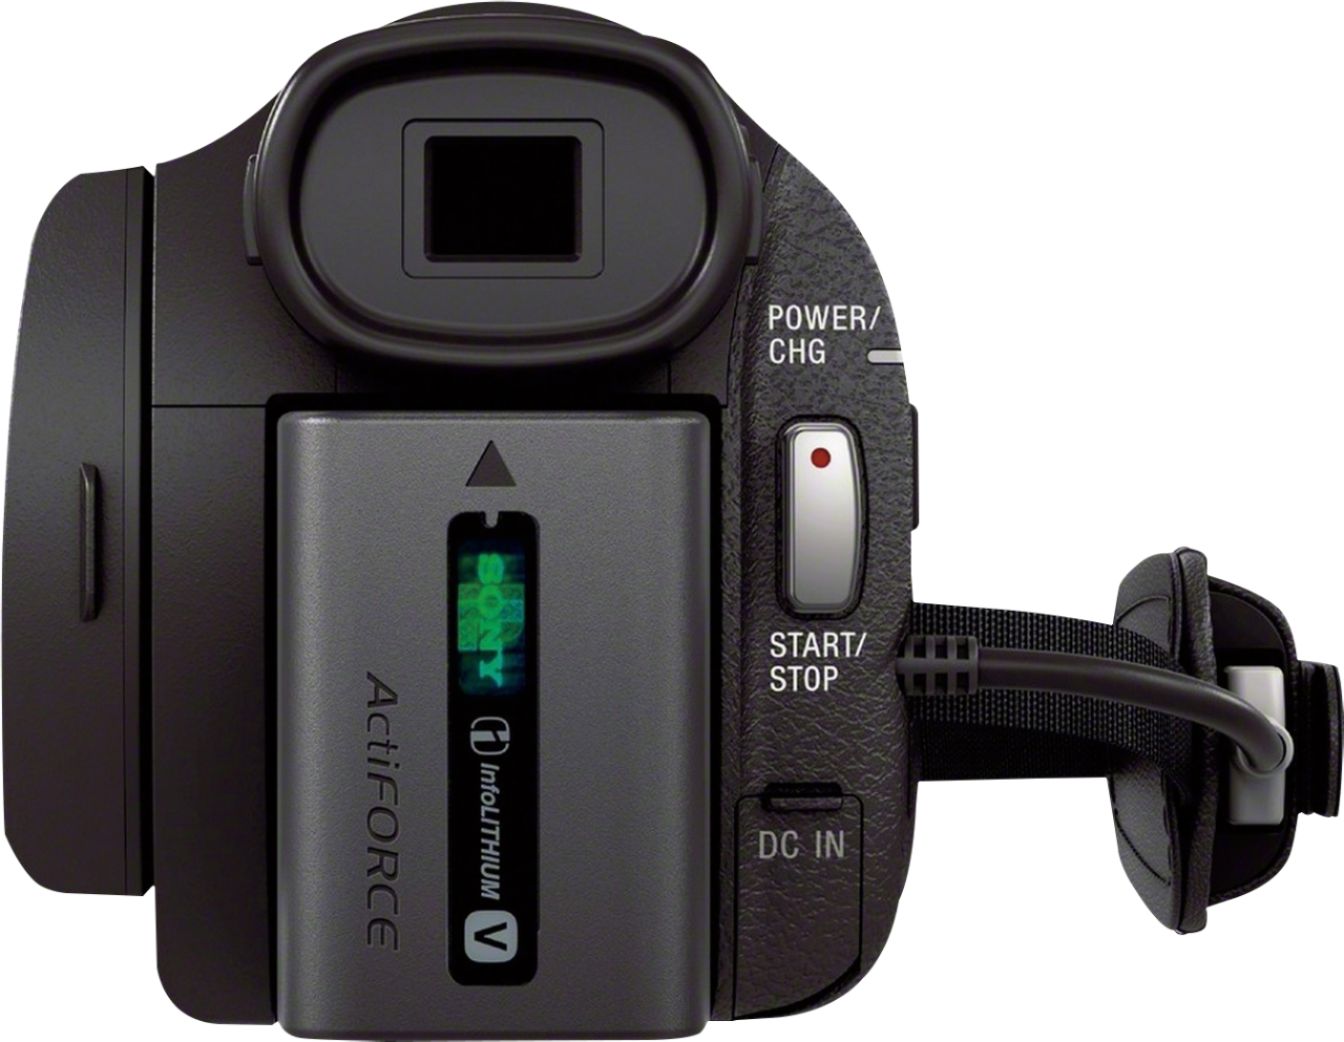 lavandería Excremento Reunir Best Buy: Sony Handycam AX33 4K Flash Memory Camcorder Black FDRAX33/B